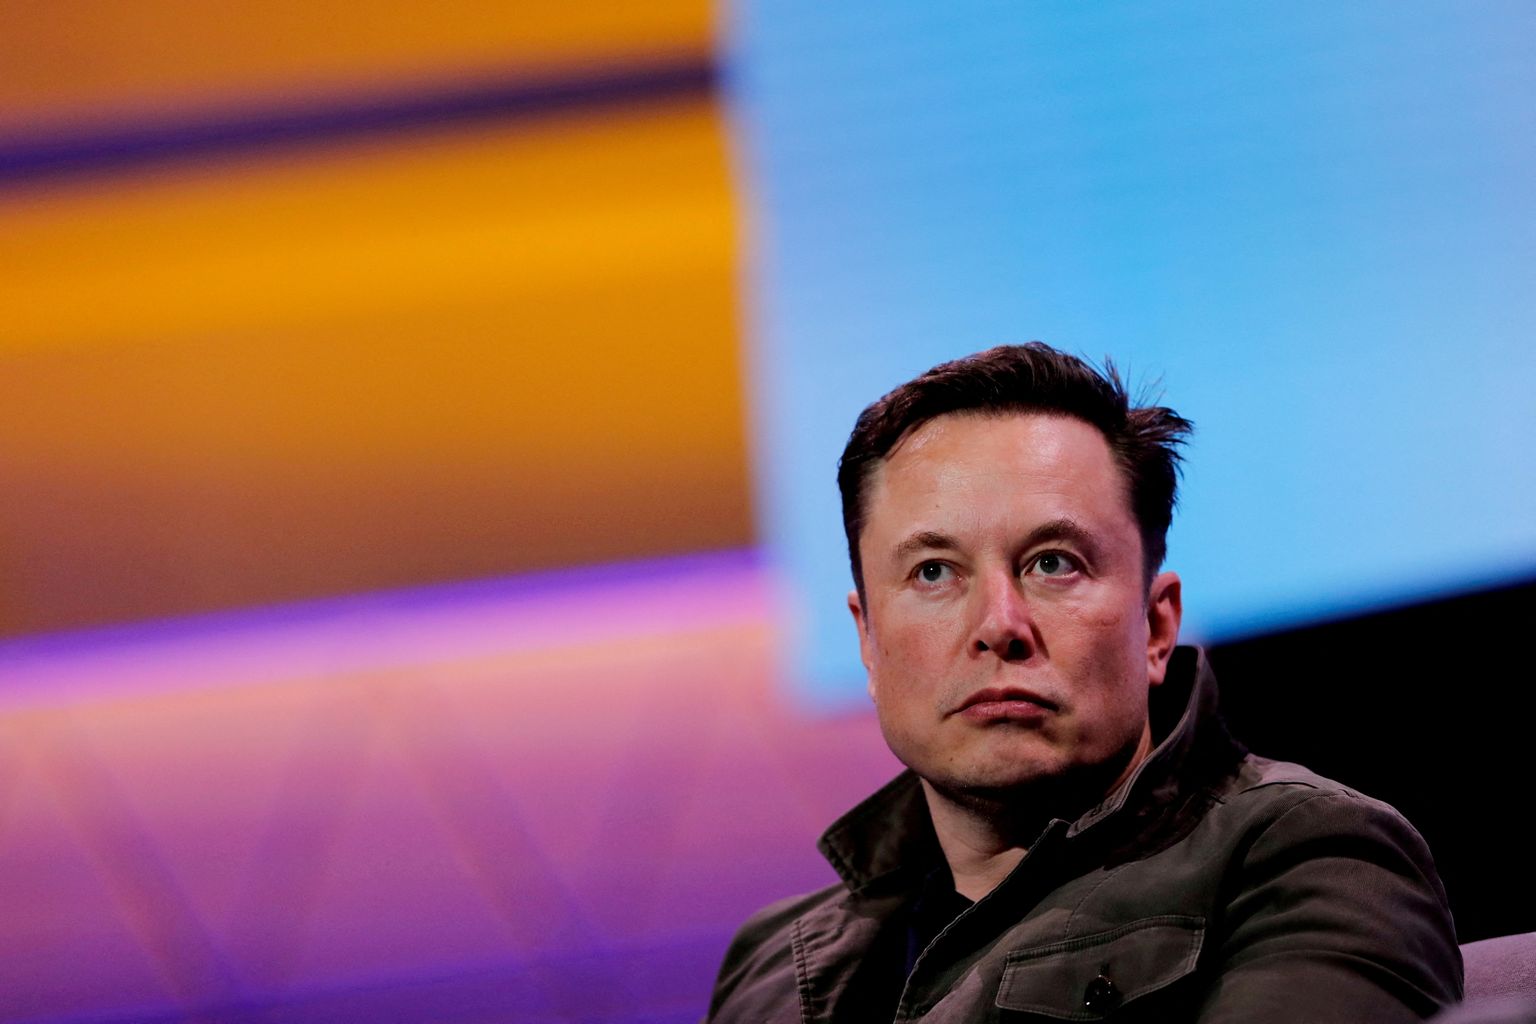 Kosmosefirma SpaceX ja autotootja Tesla tegevjuht Elon Musk, kes ostis hiljuti Twitteri, ei välista oma nutitelefoniga väljatulemist, kui Twitteri äpp blokeeritakse kahel suurel mobiiliplatvormil. Esialgu pole siiski Apple ja Google seda plaaninud teha.